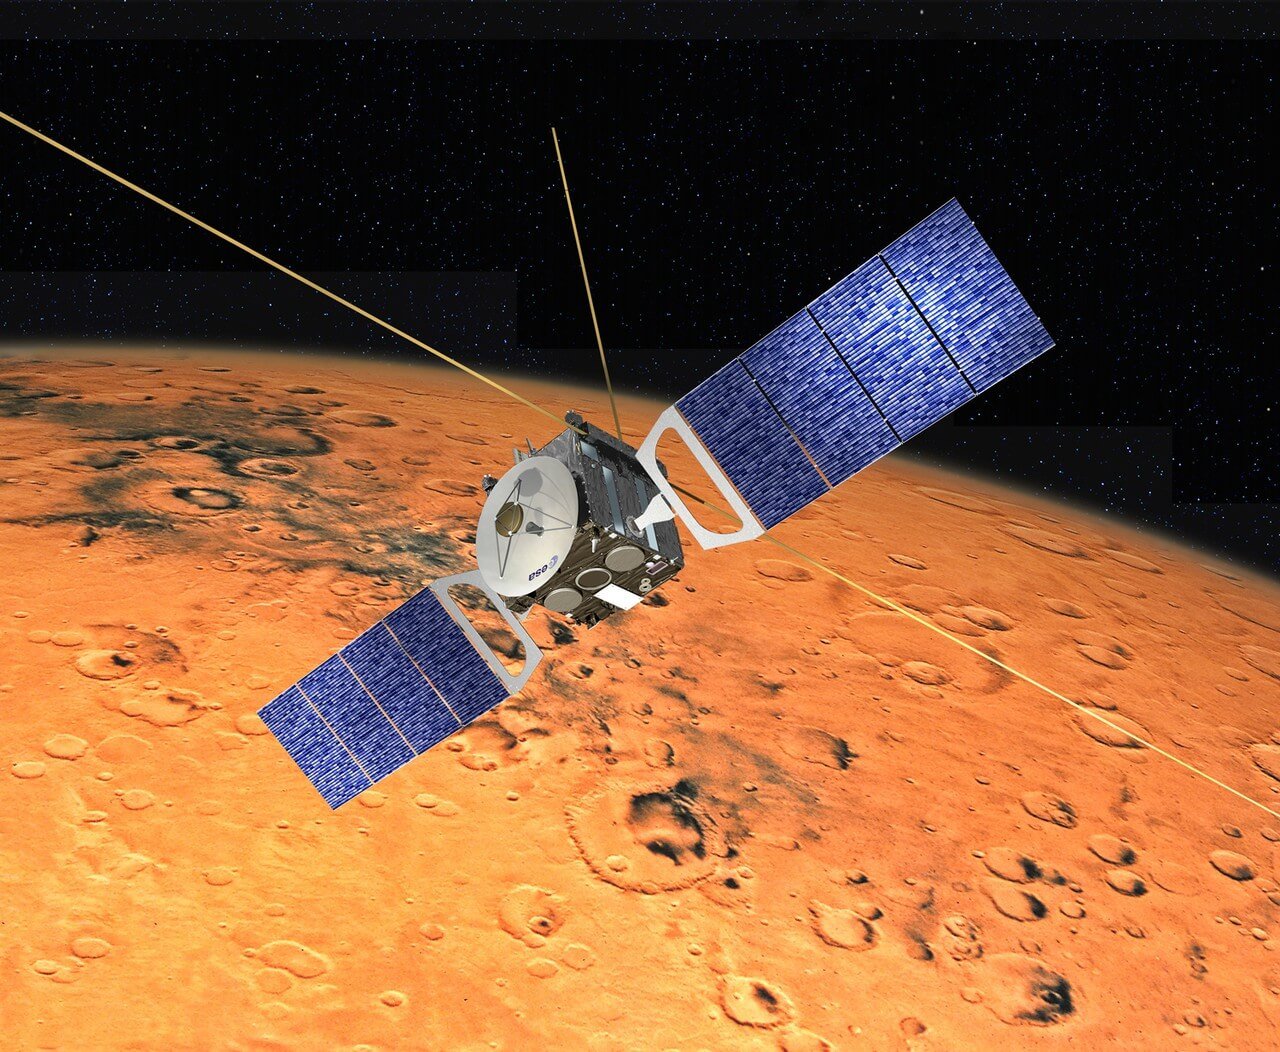 Для чего нужен аппарат «Марс-экспресс» и куда пропал его напарник «Бигль-2»?